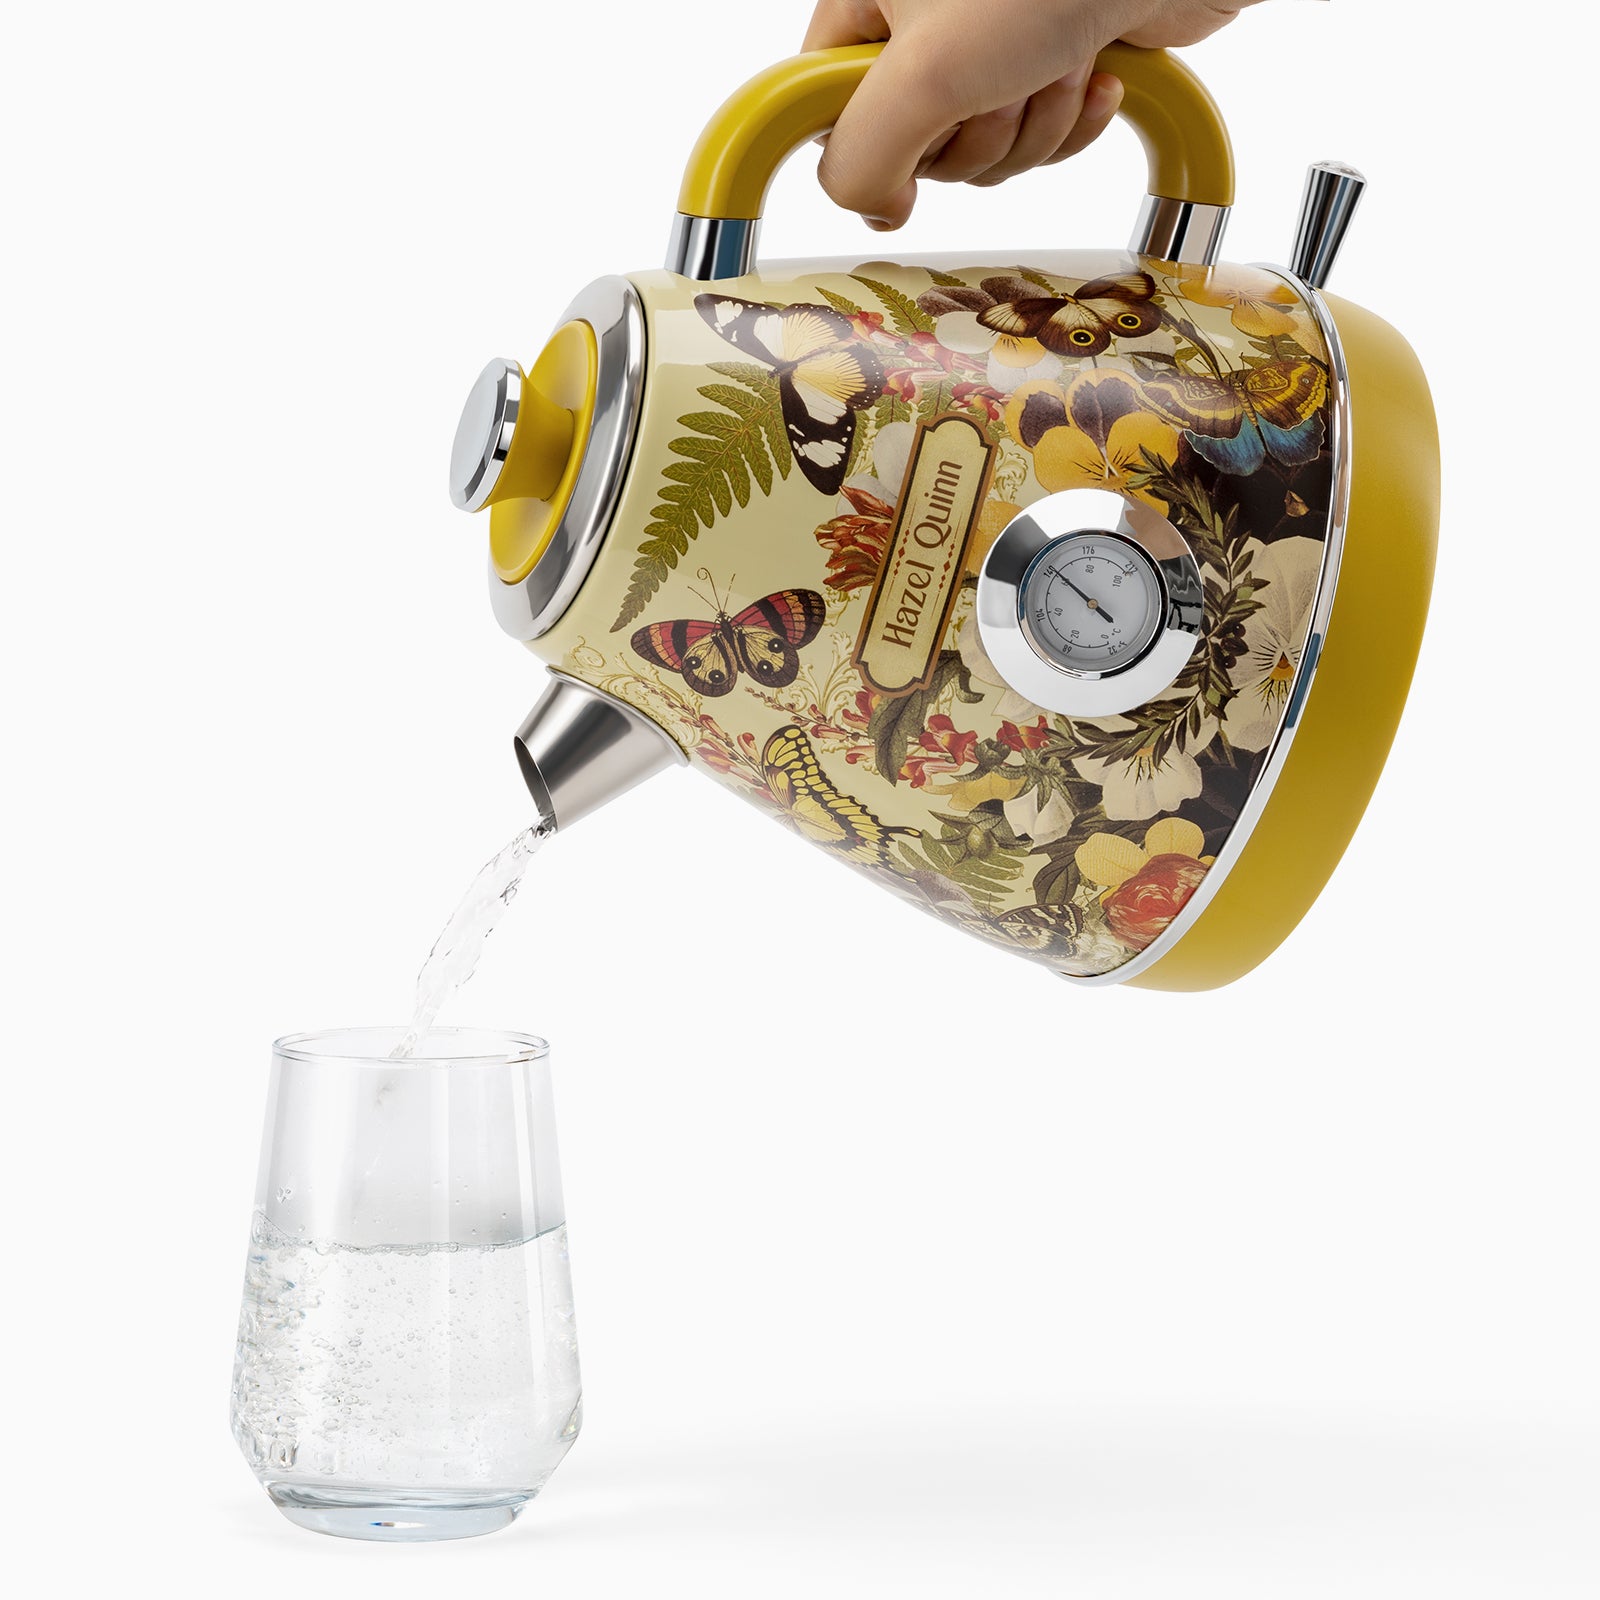 Hazel Quinn Retro Electric Kettle - 1.7 Liters / 57.5 Ounces Tea